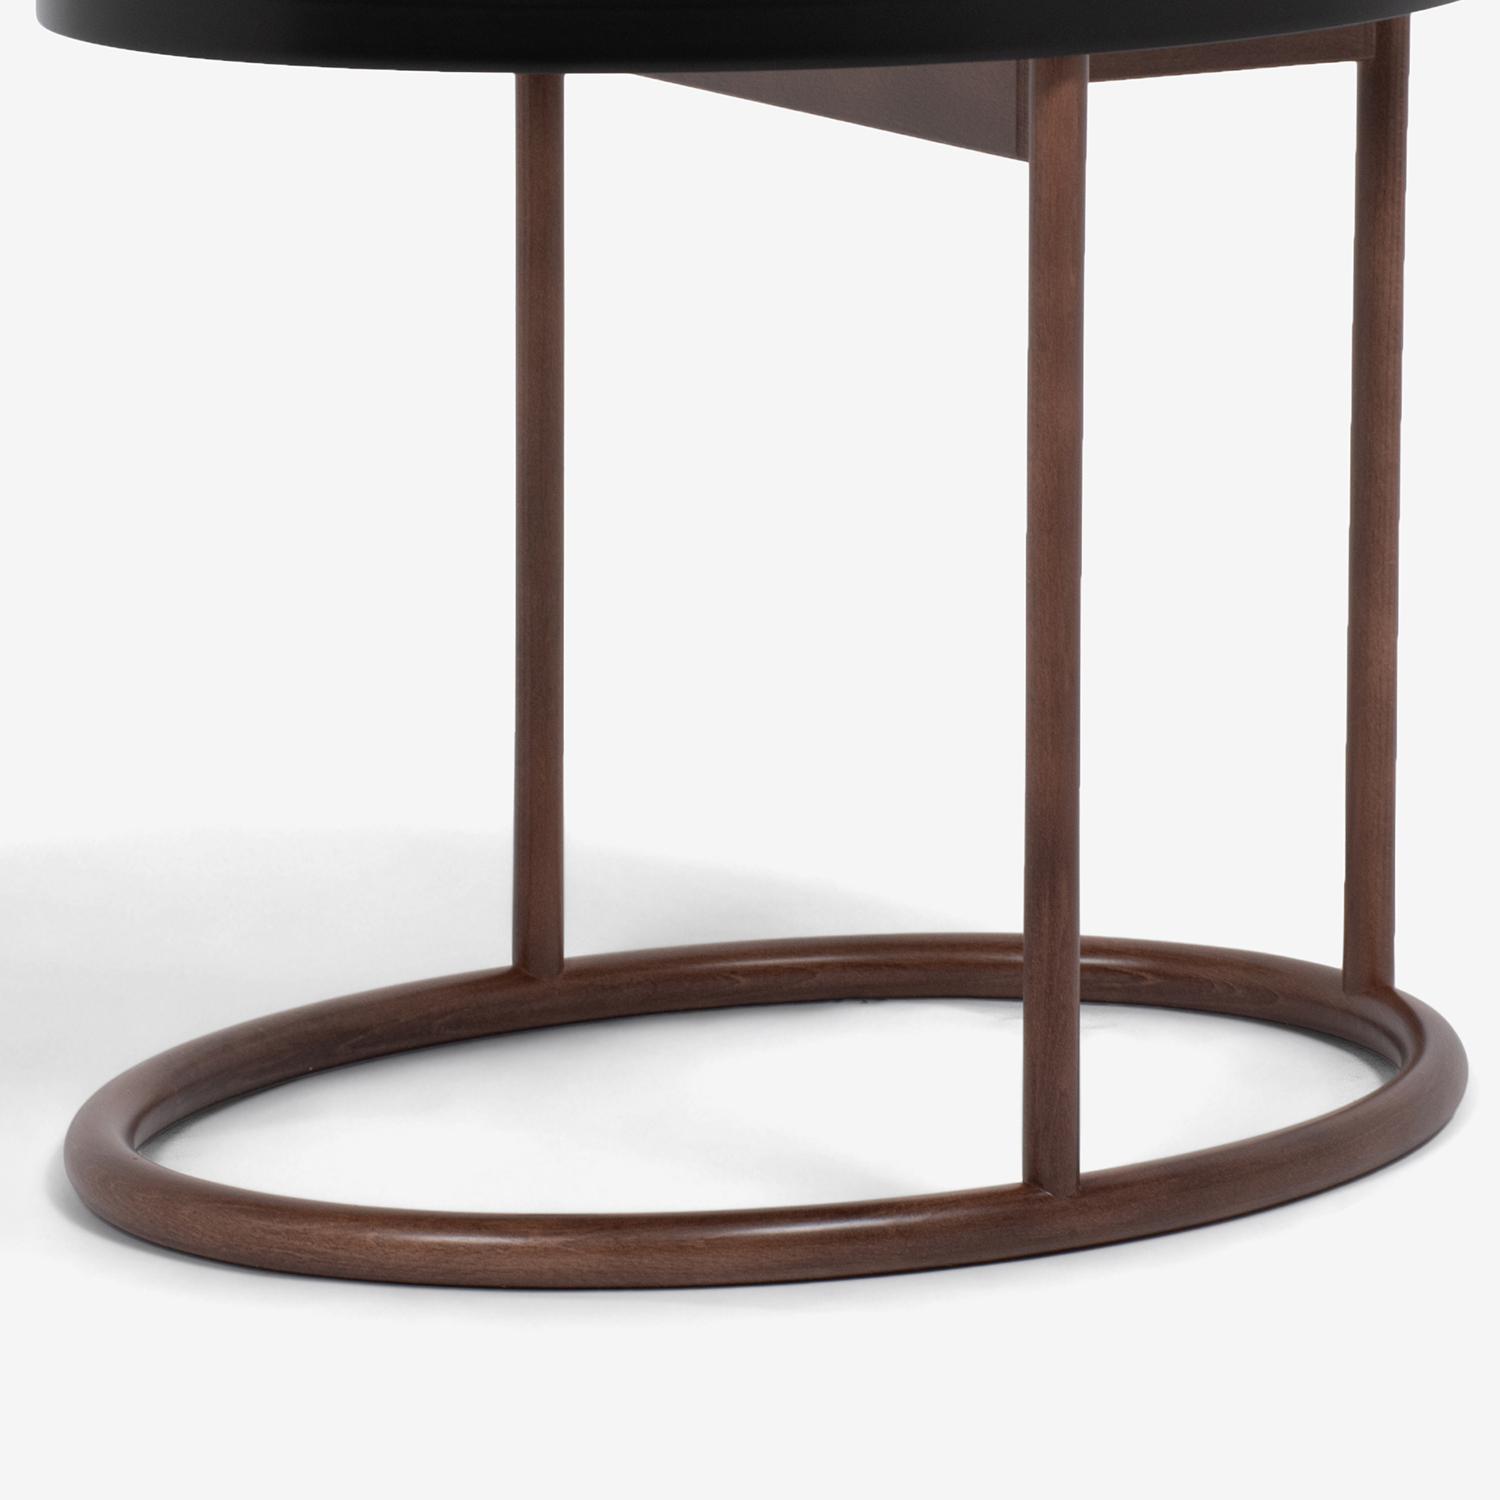 秋田木工 サイドテーブル楕円 「KODエリッセ」天板ブラック色/フレームウォールナット色